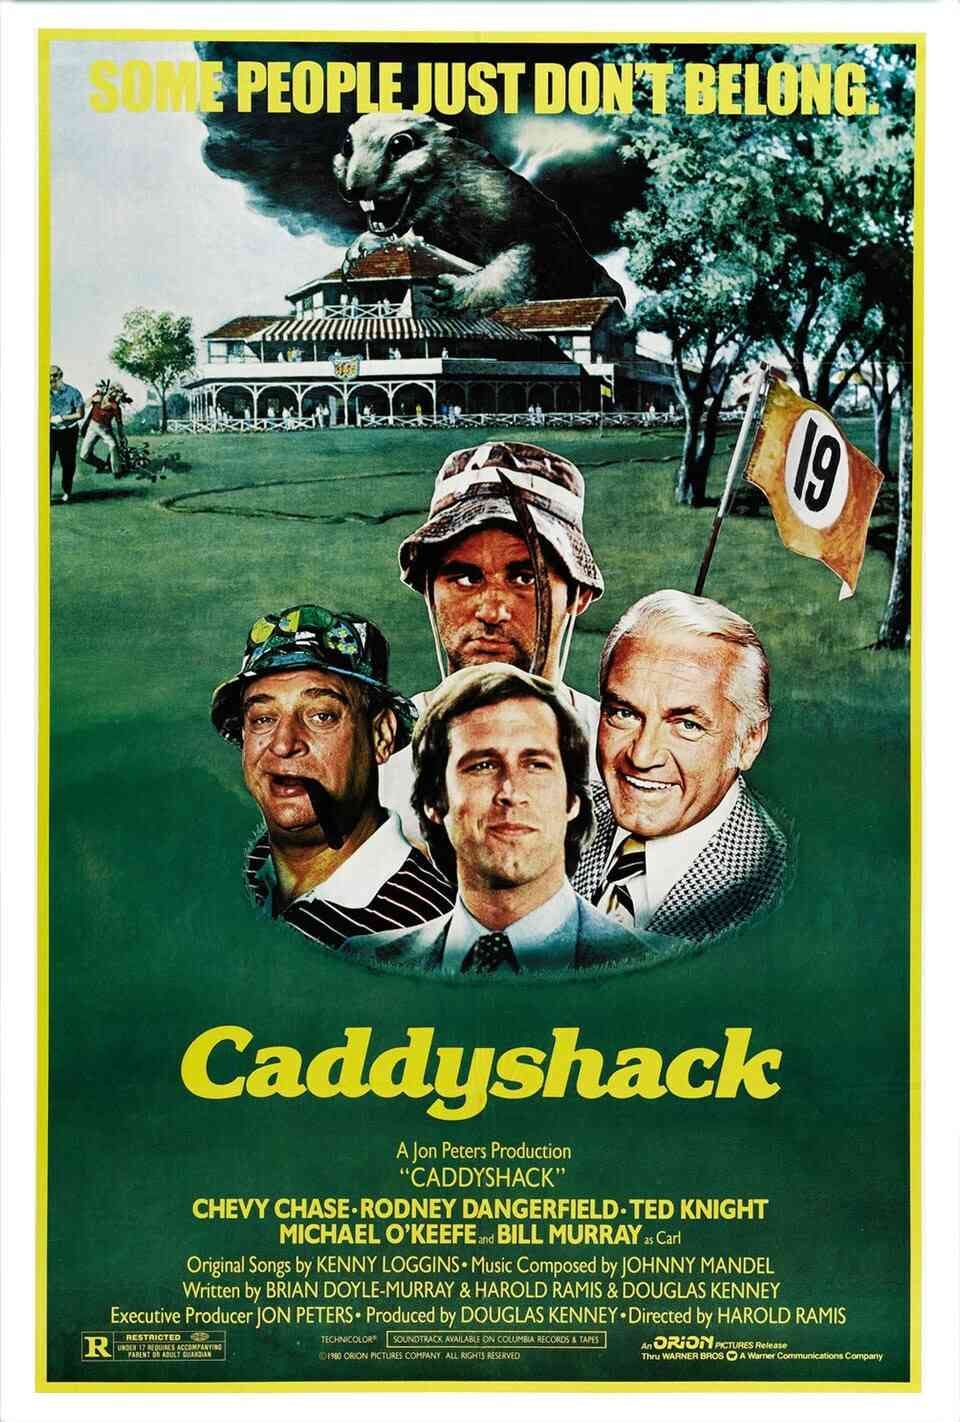 Read Caddyshack screenplay.